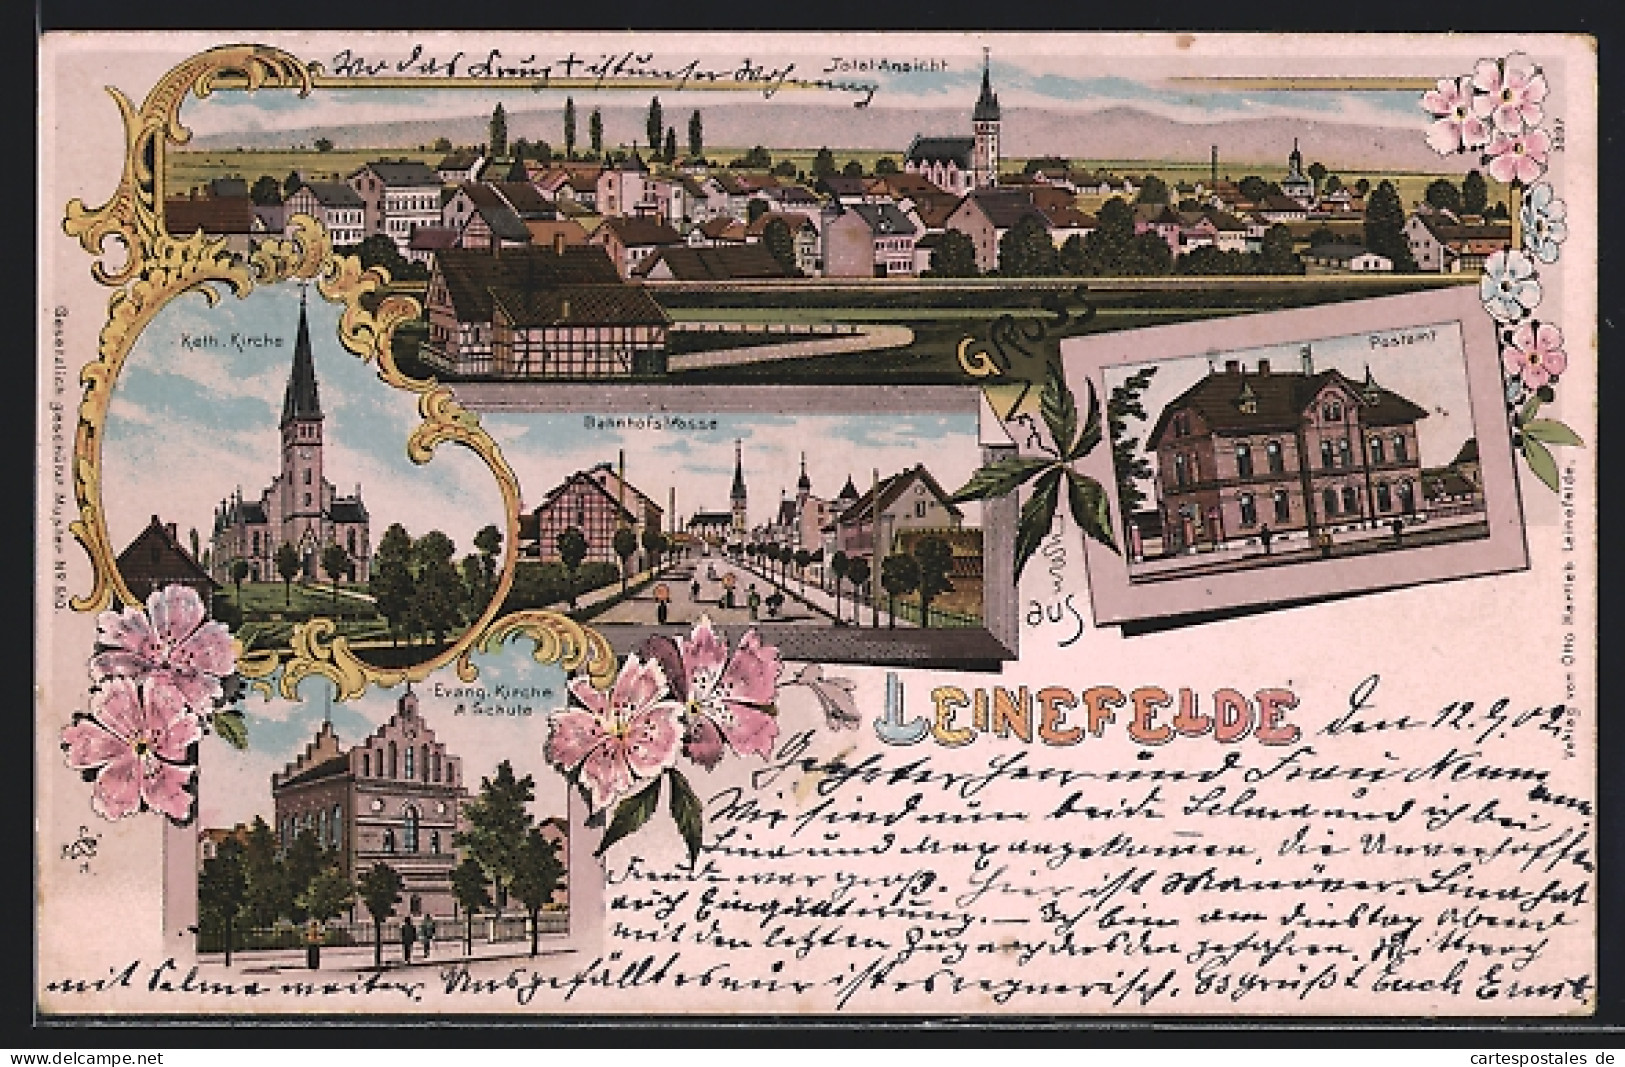 Lithographie Leinefelde, Blick In Die Bahnhofstrasse, Evang. Kirche Mit Schule, Postamt  - Leinefelde